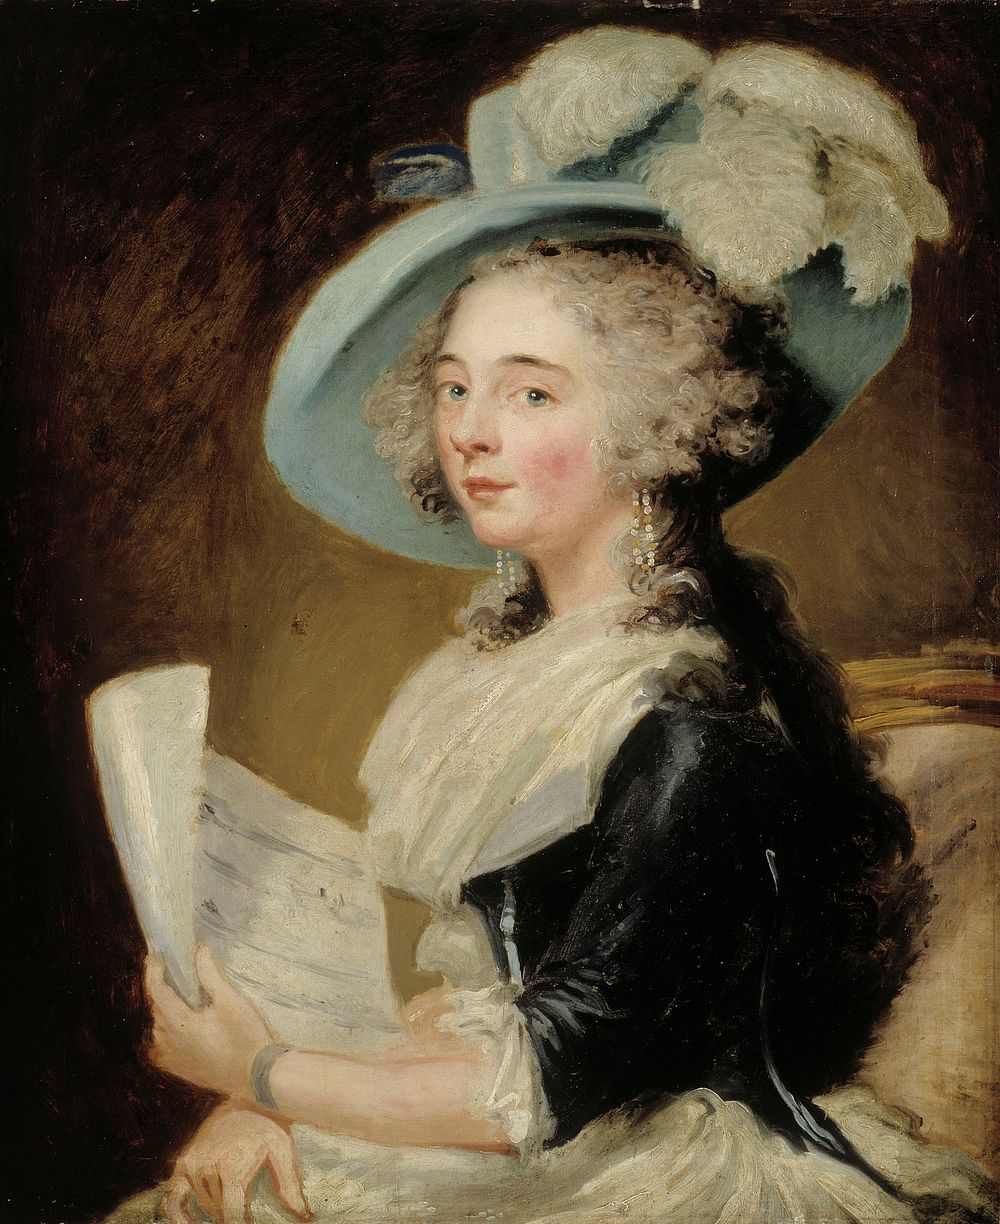 English singer, 1790 - 1799